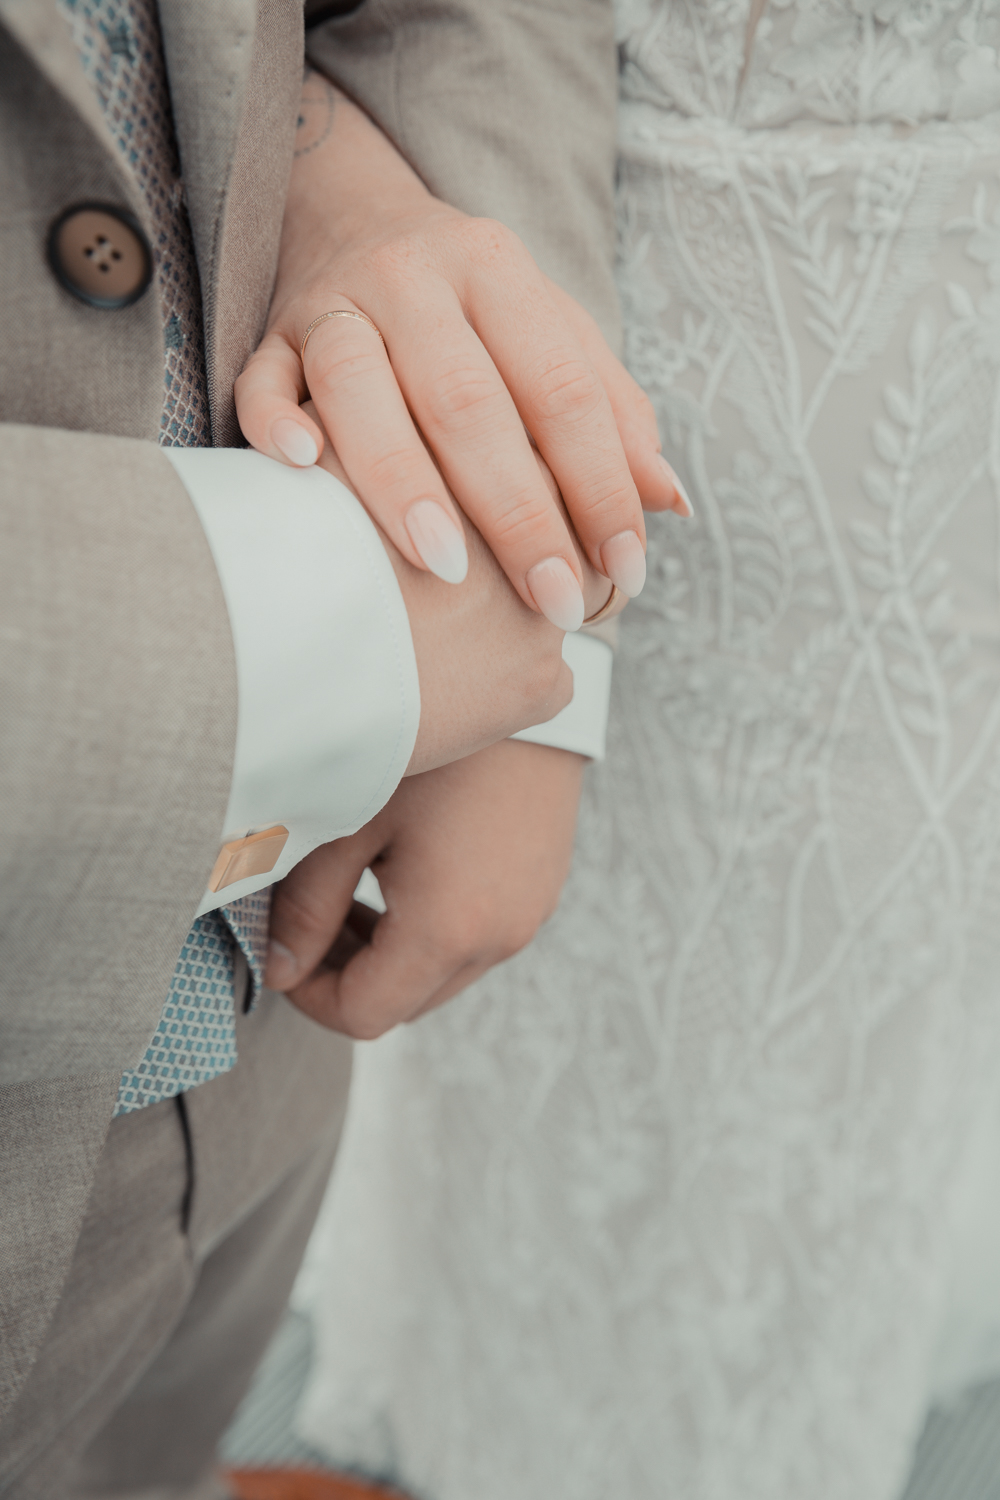 Detailshooting am Grunewaldturm vom Brautpaar. Auf dem Foto sieht man die Hände des Brautpaars , sowie die goldenen manschettenknöpfe des Bräutigams. Teil einer ganztägigen Hochzeitsreportage.